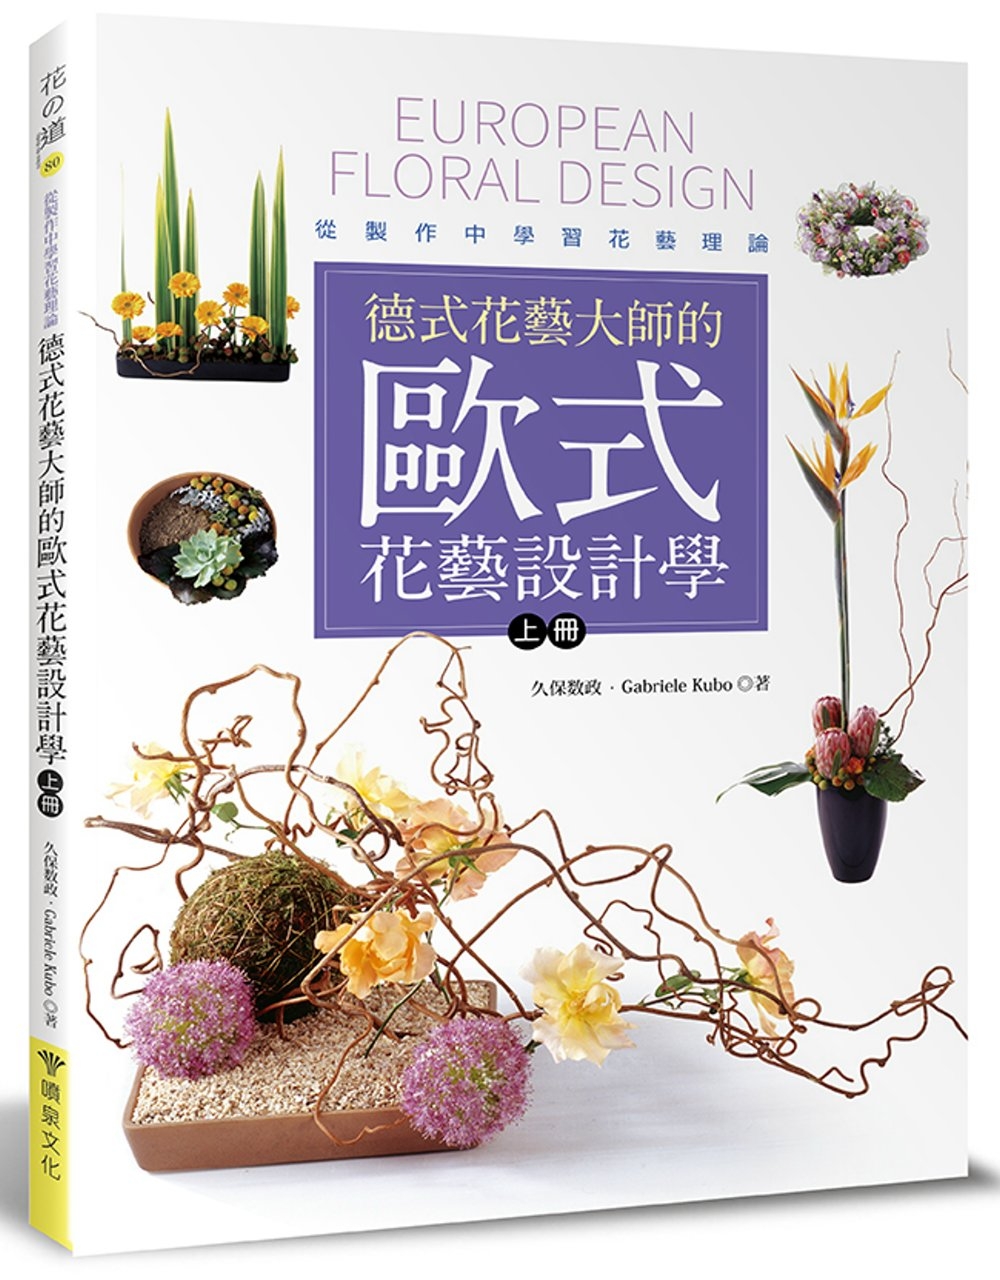 德式花藝大師的歐式花藝設計學(上冊)：從製作中學習花藝理論